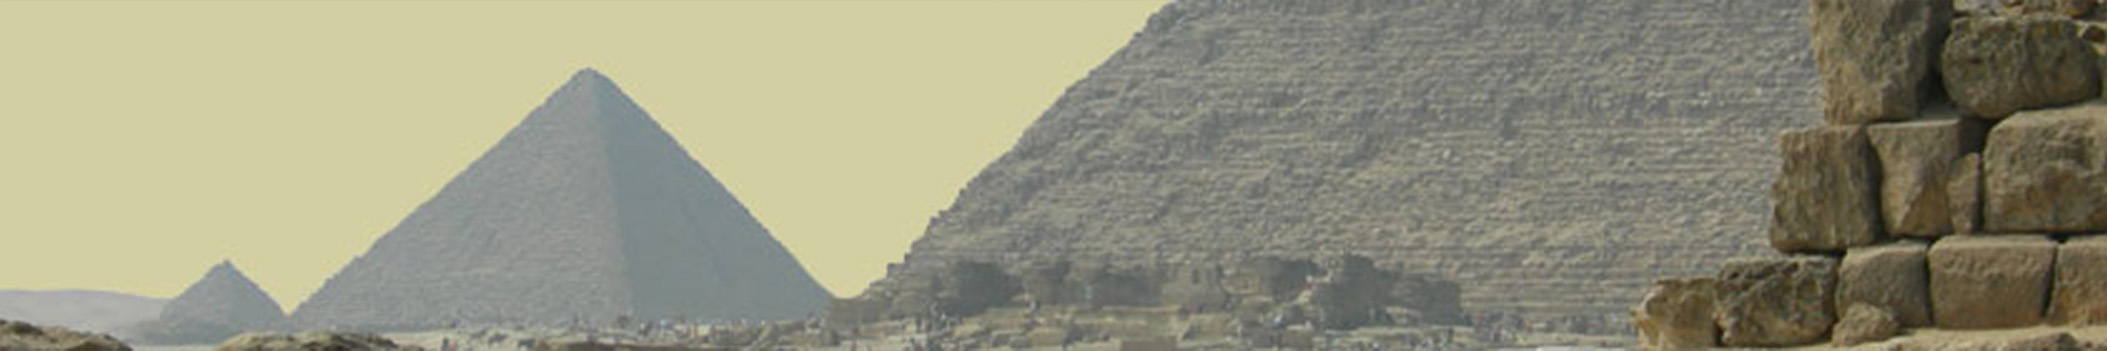 Vlasblom piramide